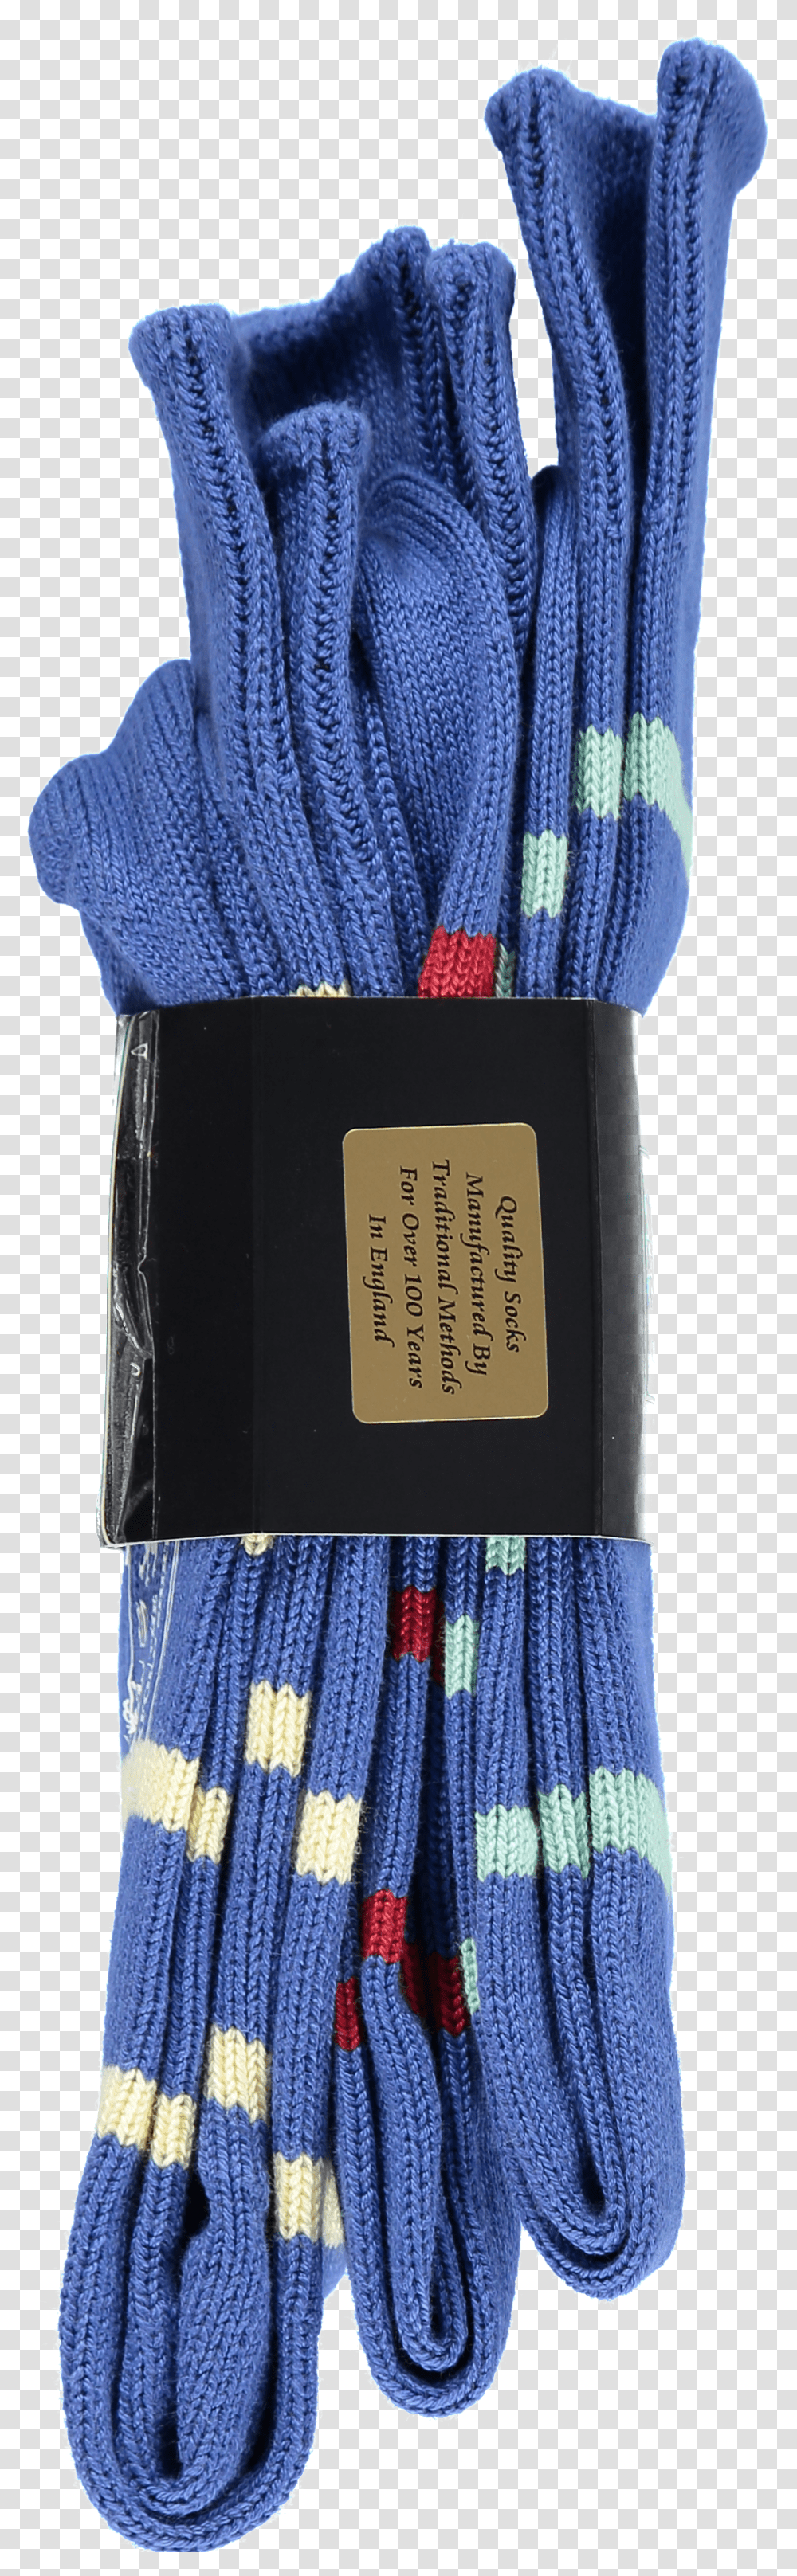 Pack Of Socks In Royal Blue StripesTitle 3 Pack Label Transparent Png